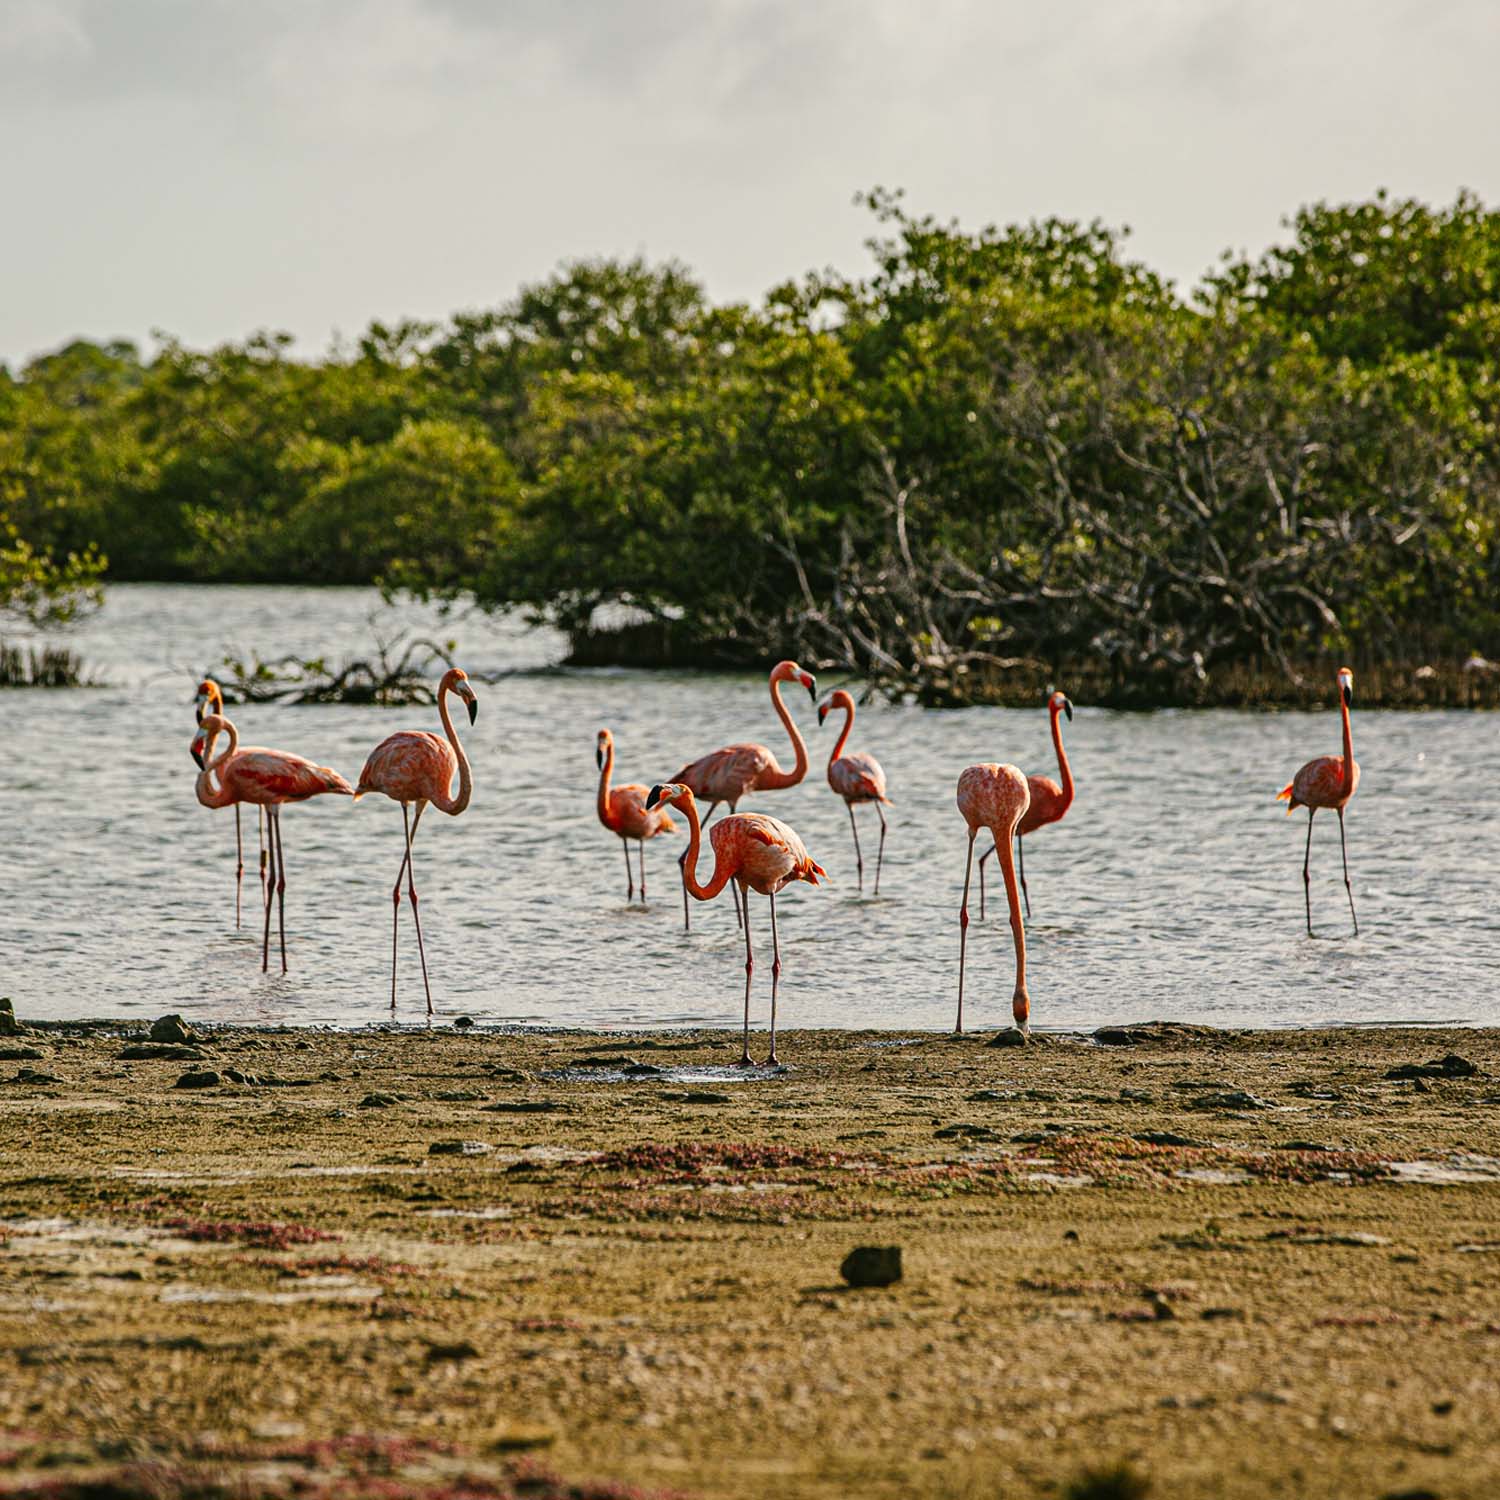 Groep flamingo's die zich in water bevinden